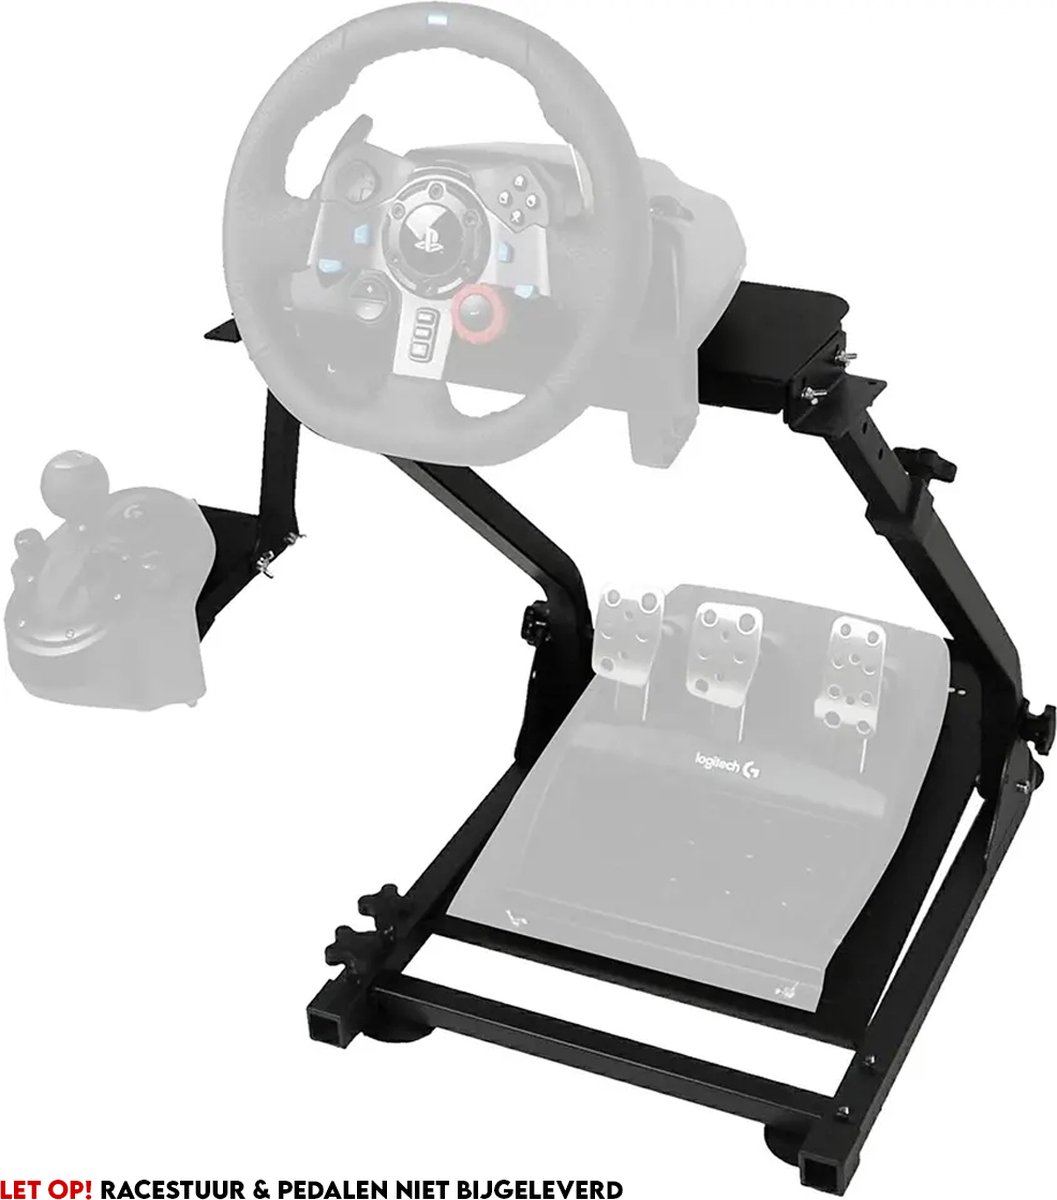 Underestimate® Wheel Stand – Racestuur Standaard – Racestoel – Voor PlayStation, Xbox & PC (Exclusief racestuur)